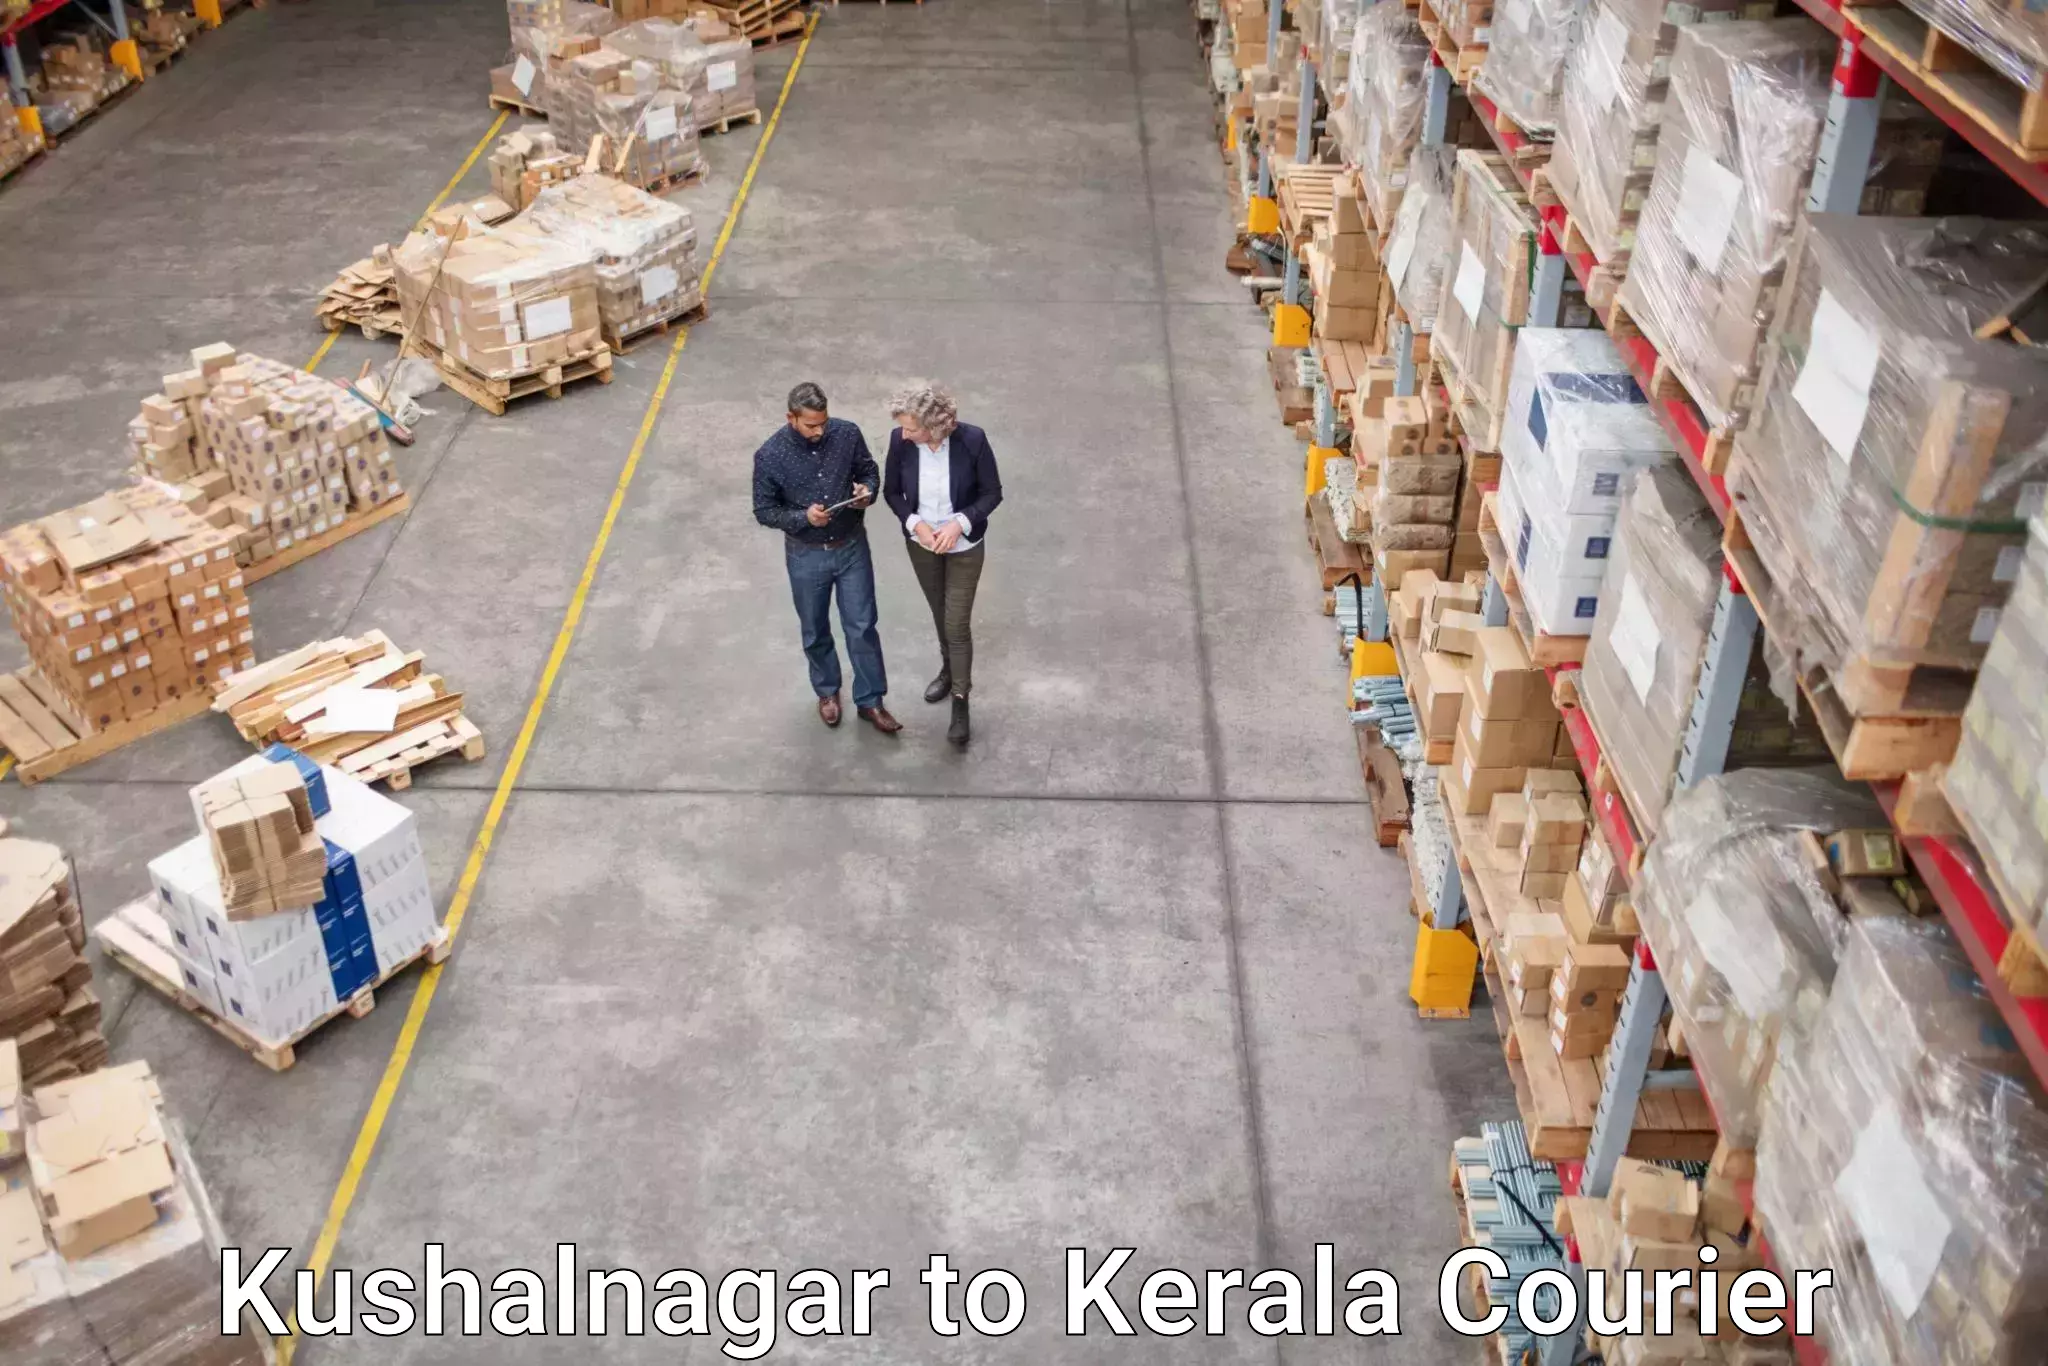 Customer-oriented courier services Kushalnagar to Thrissur